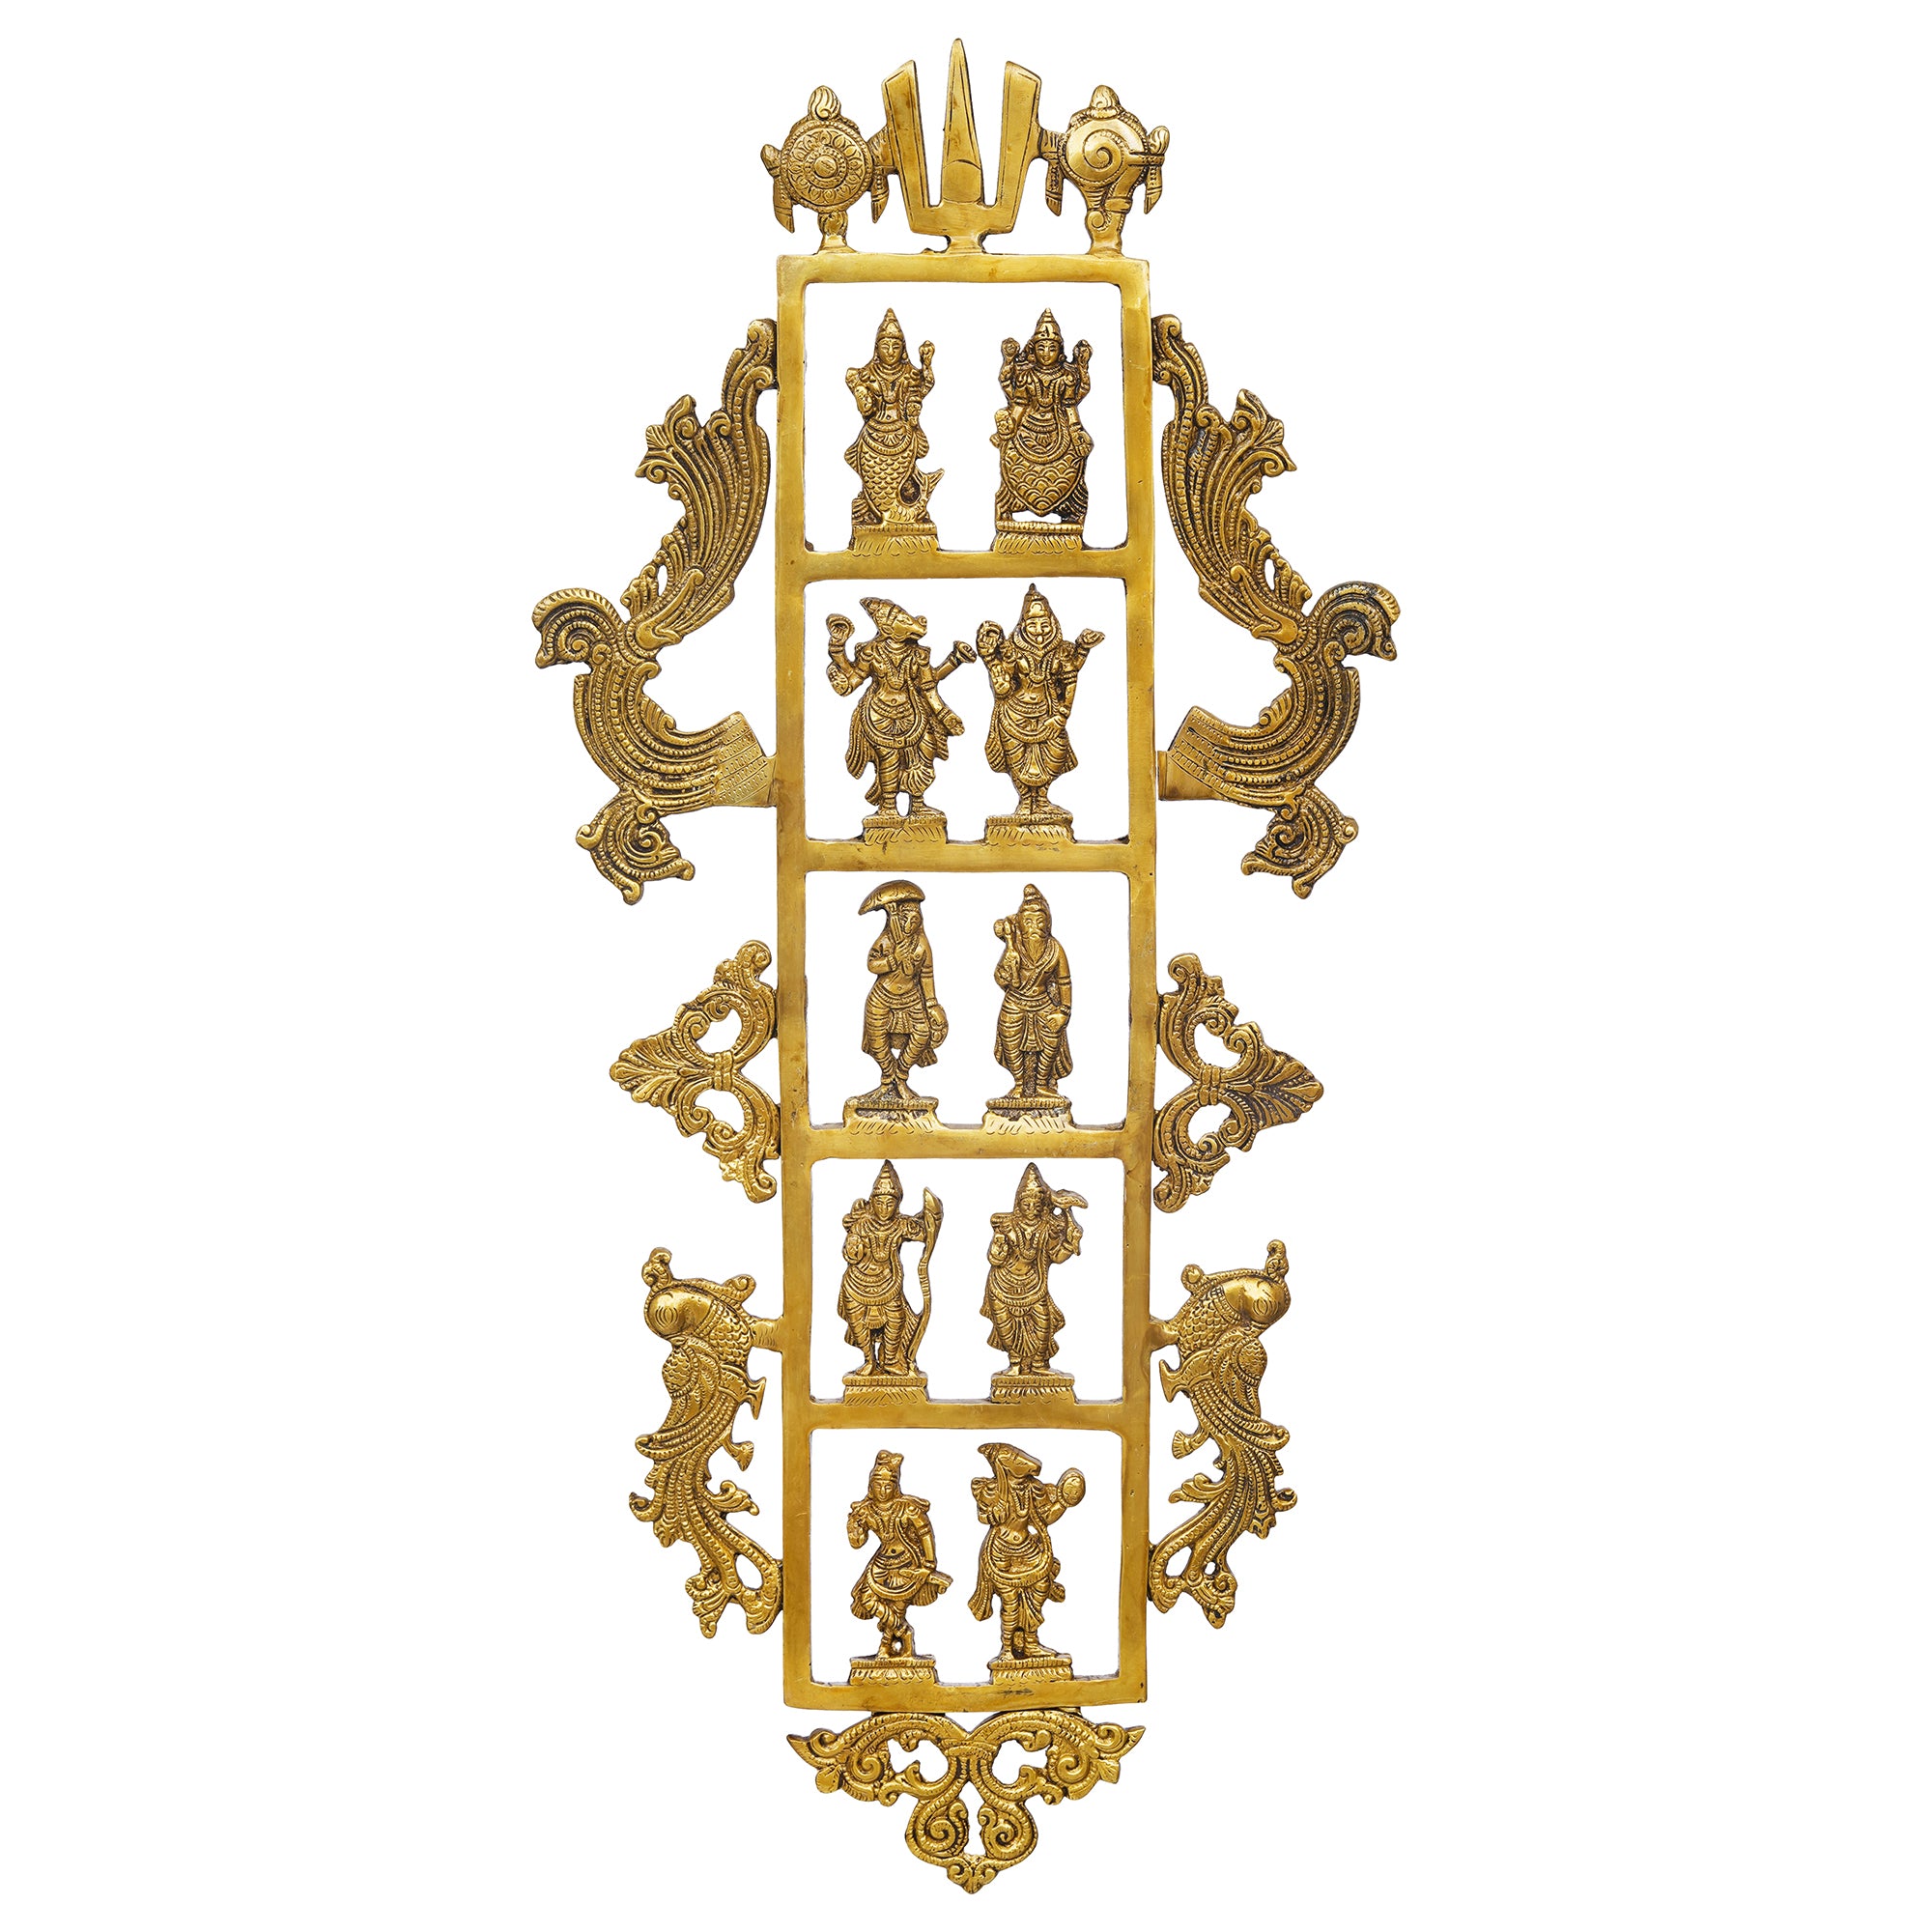 eCraftIndia Golden Brass Lord Vishnu Dashavatara - Ten Incarnations of Vishnu Religious Wall Hanging 2